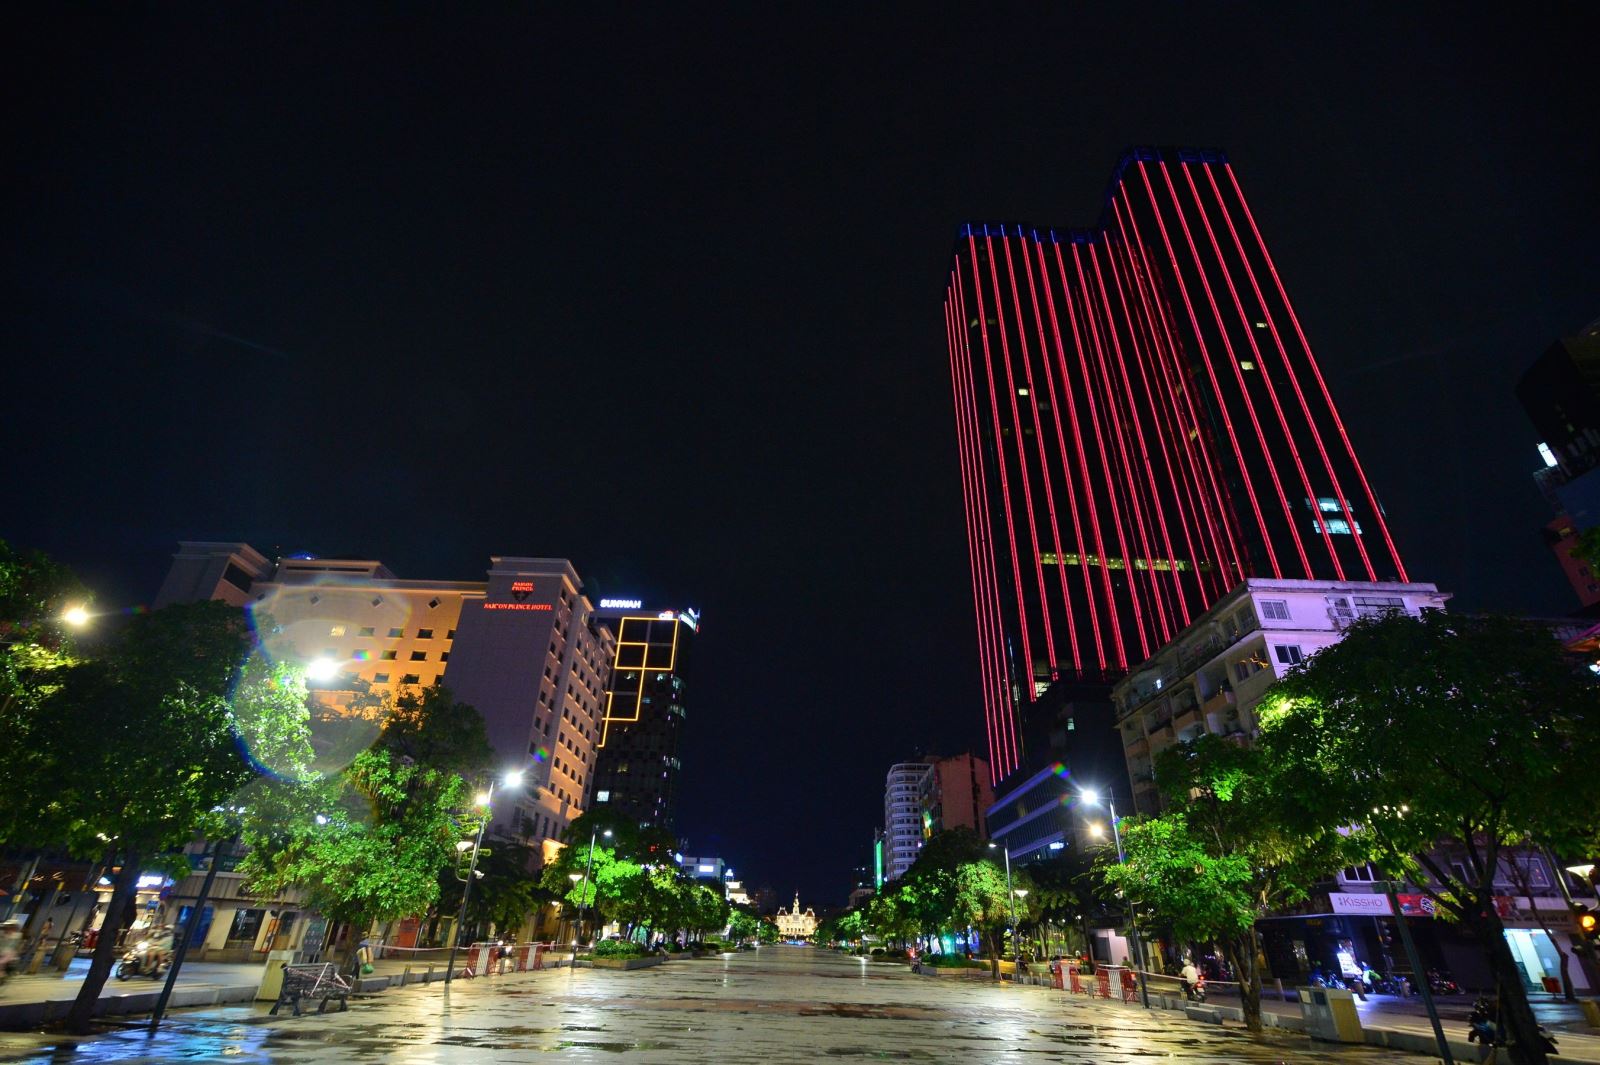 TP Hồ Chí Minh: Tận hưởng nhịp sống sôi động của một trong những thành phố đông đúc nhất Việt Nam - TP Hồ Chí Minh! Khám phá văn hóa đa dạng và thăng hoa trong không gian đô thị hiện đại này qua những hình ảnh chất lượng cao.